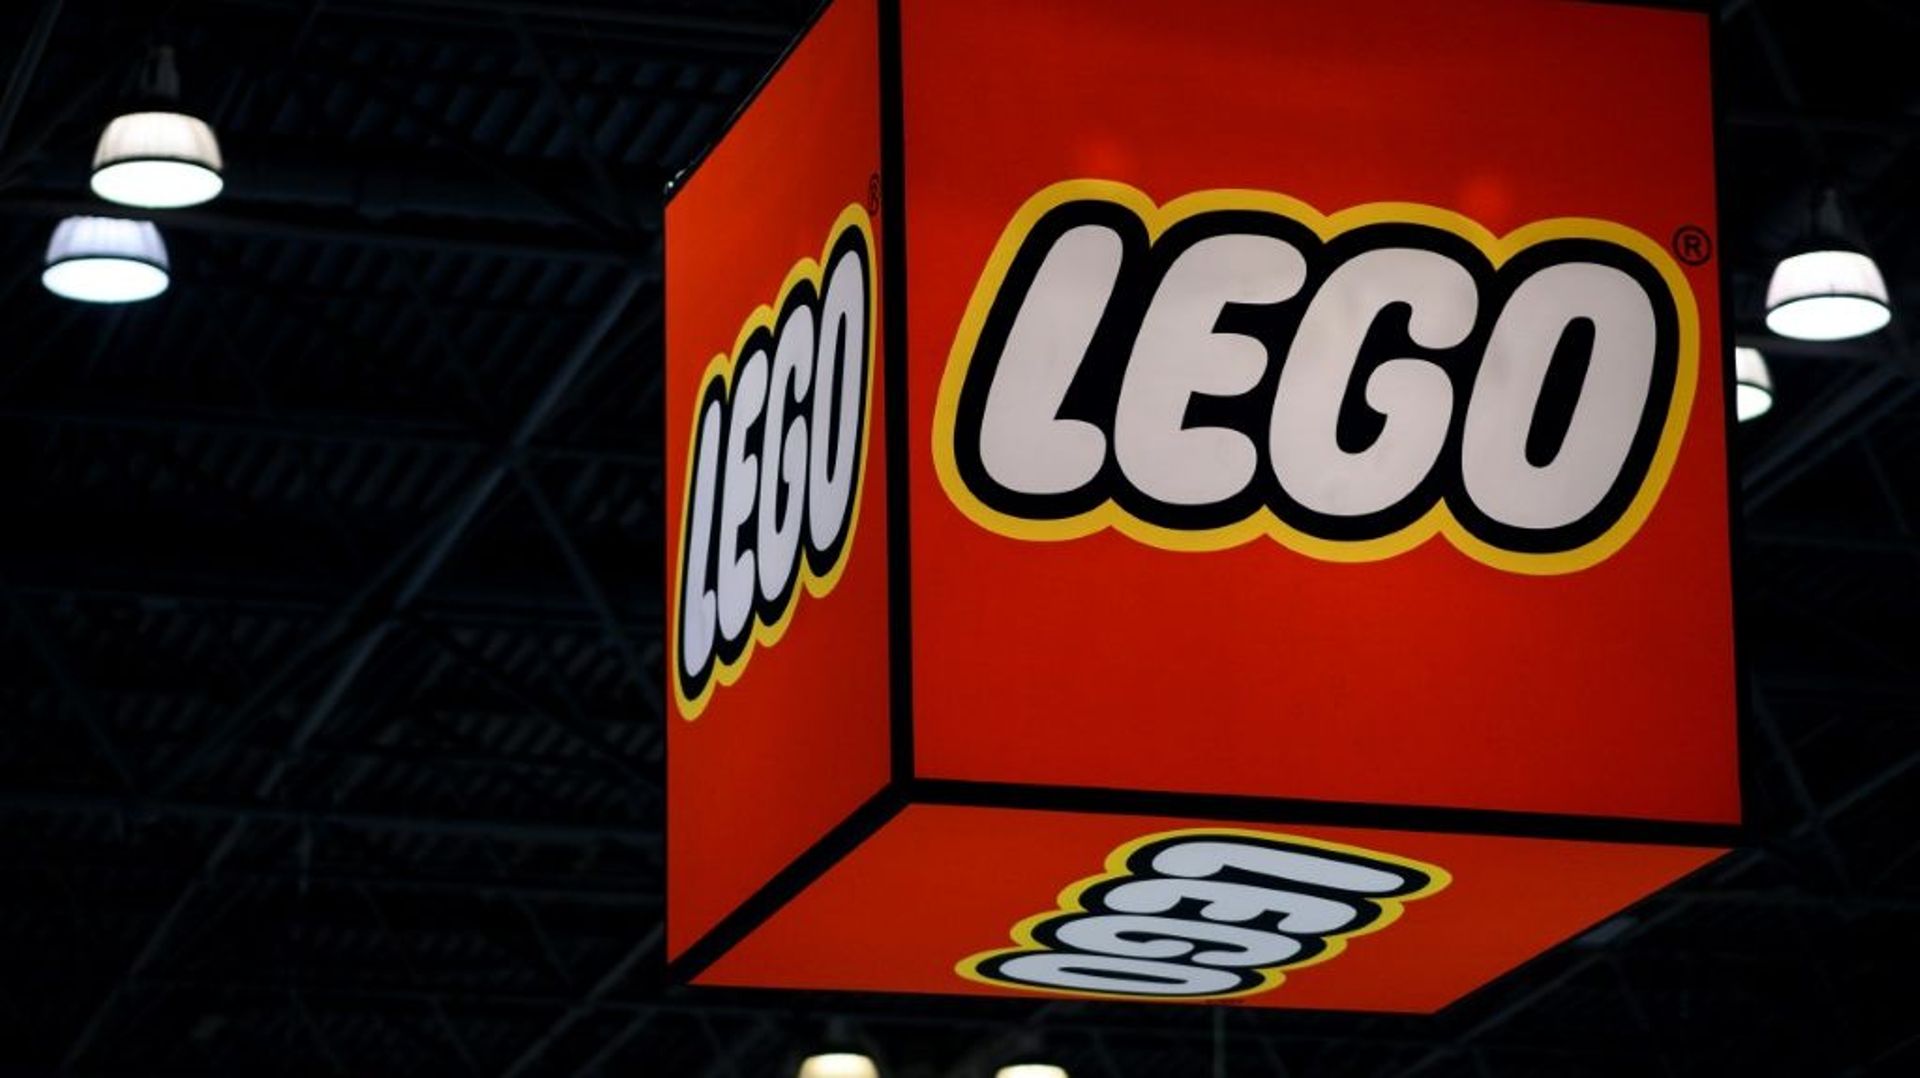 Lego signe une année record en 2020.